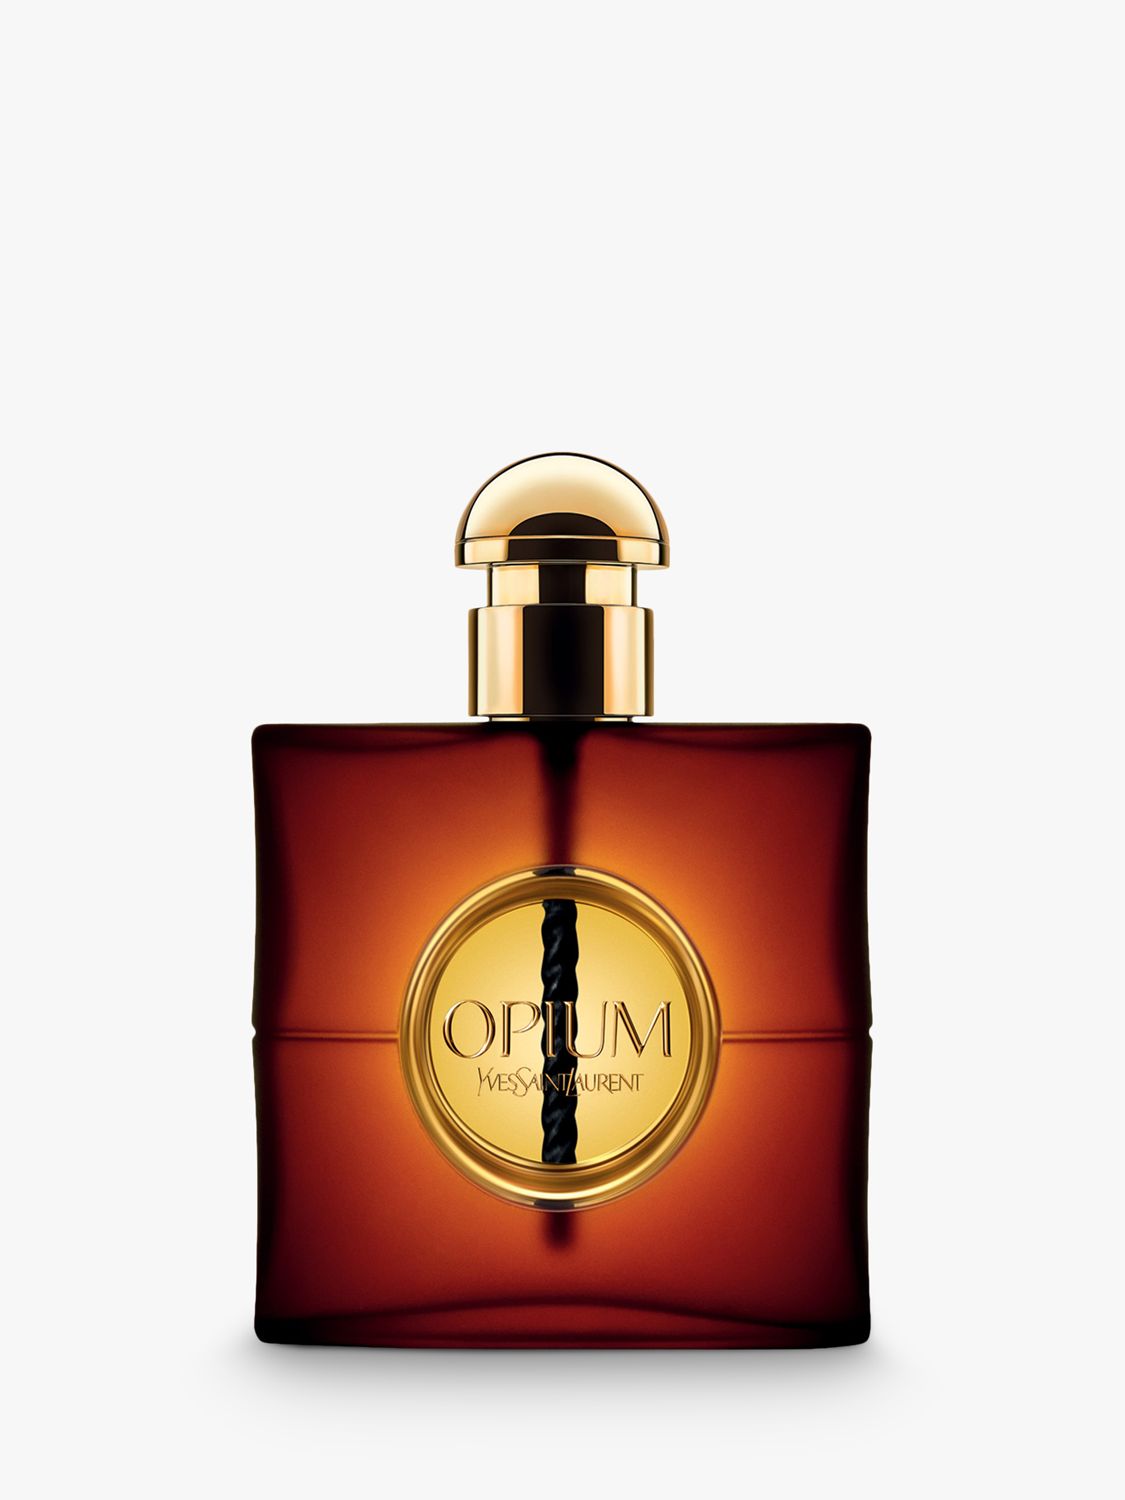 Yves Saint Laurent Black Opium Eau de Parfum 50ml Fragrance Gift Set at John  Lewis & Partners